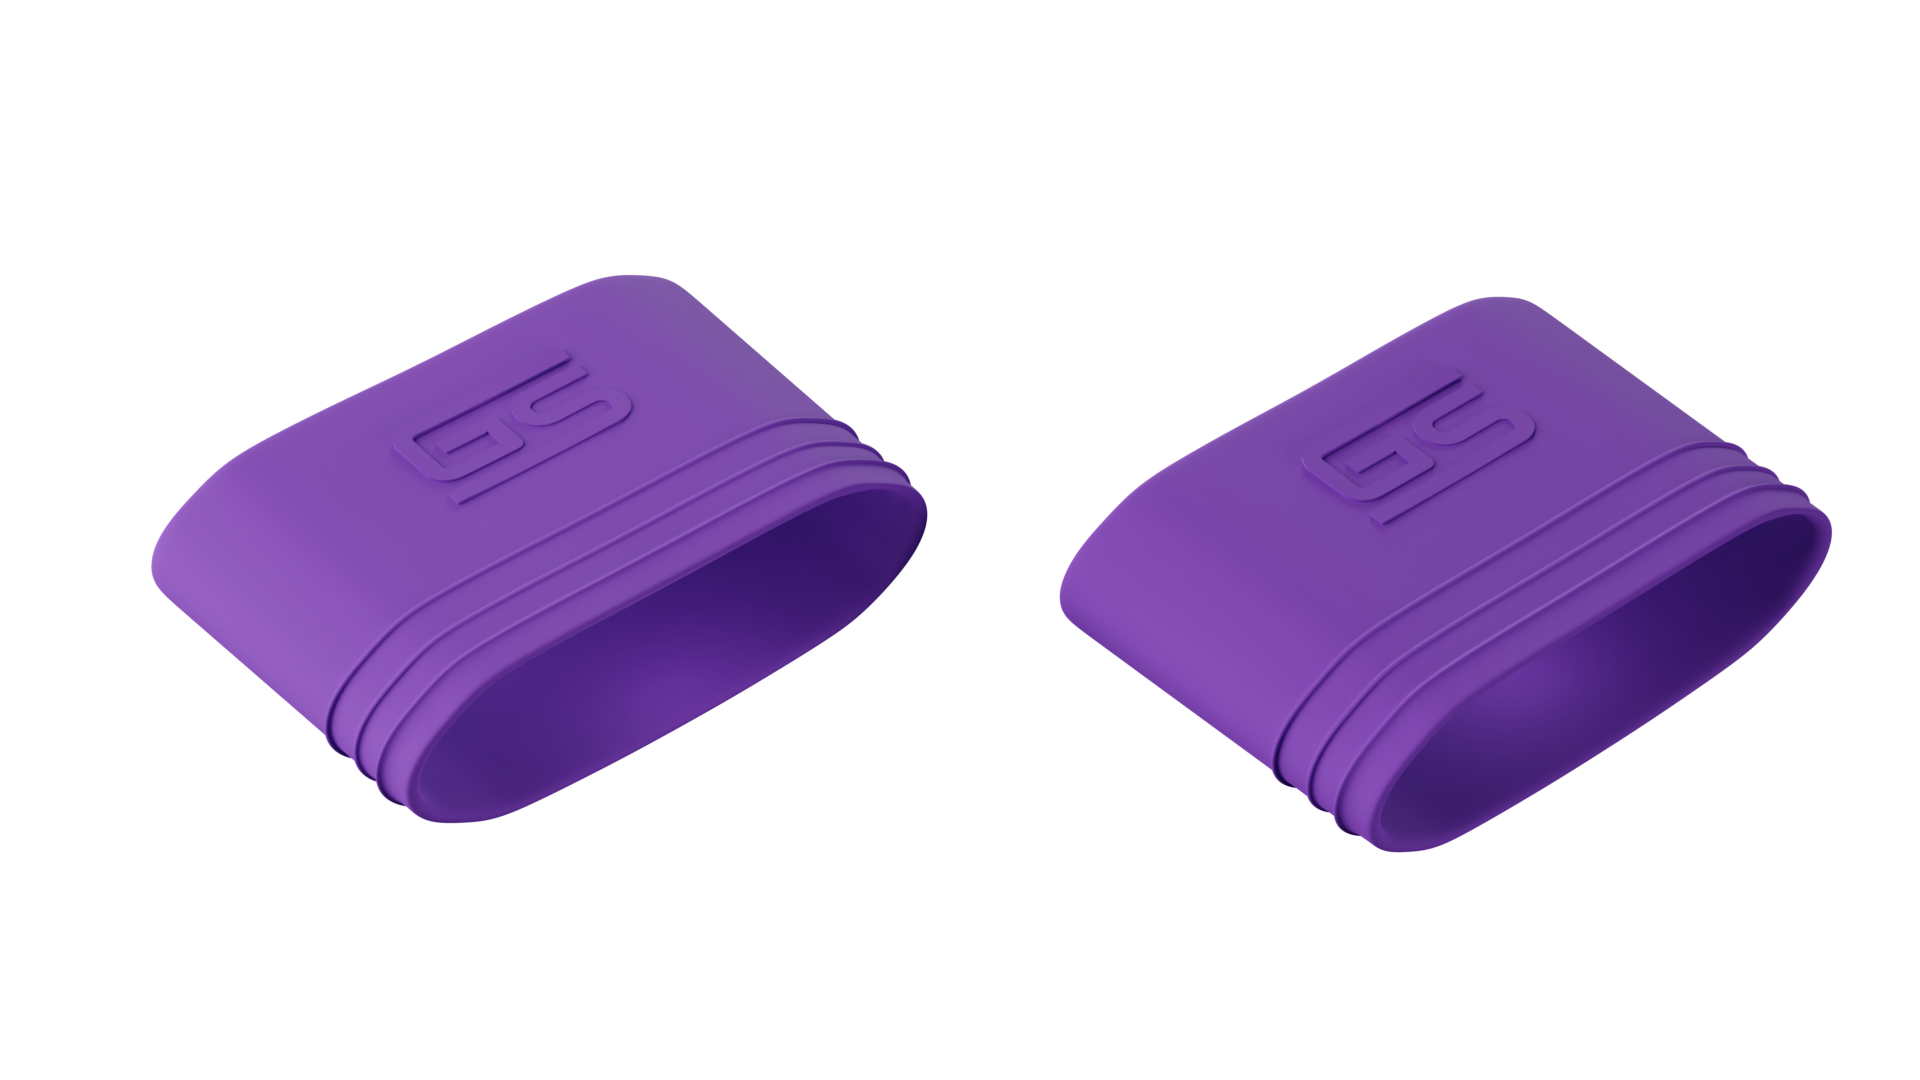 Gstrap's (purple) 